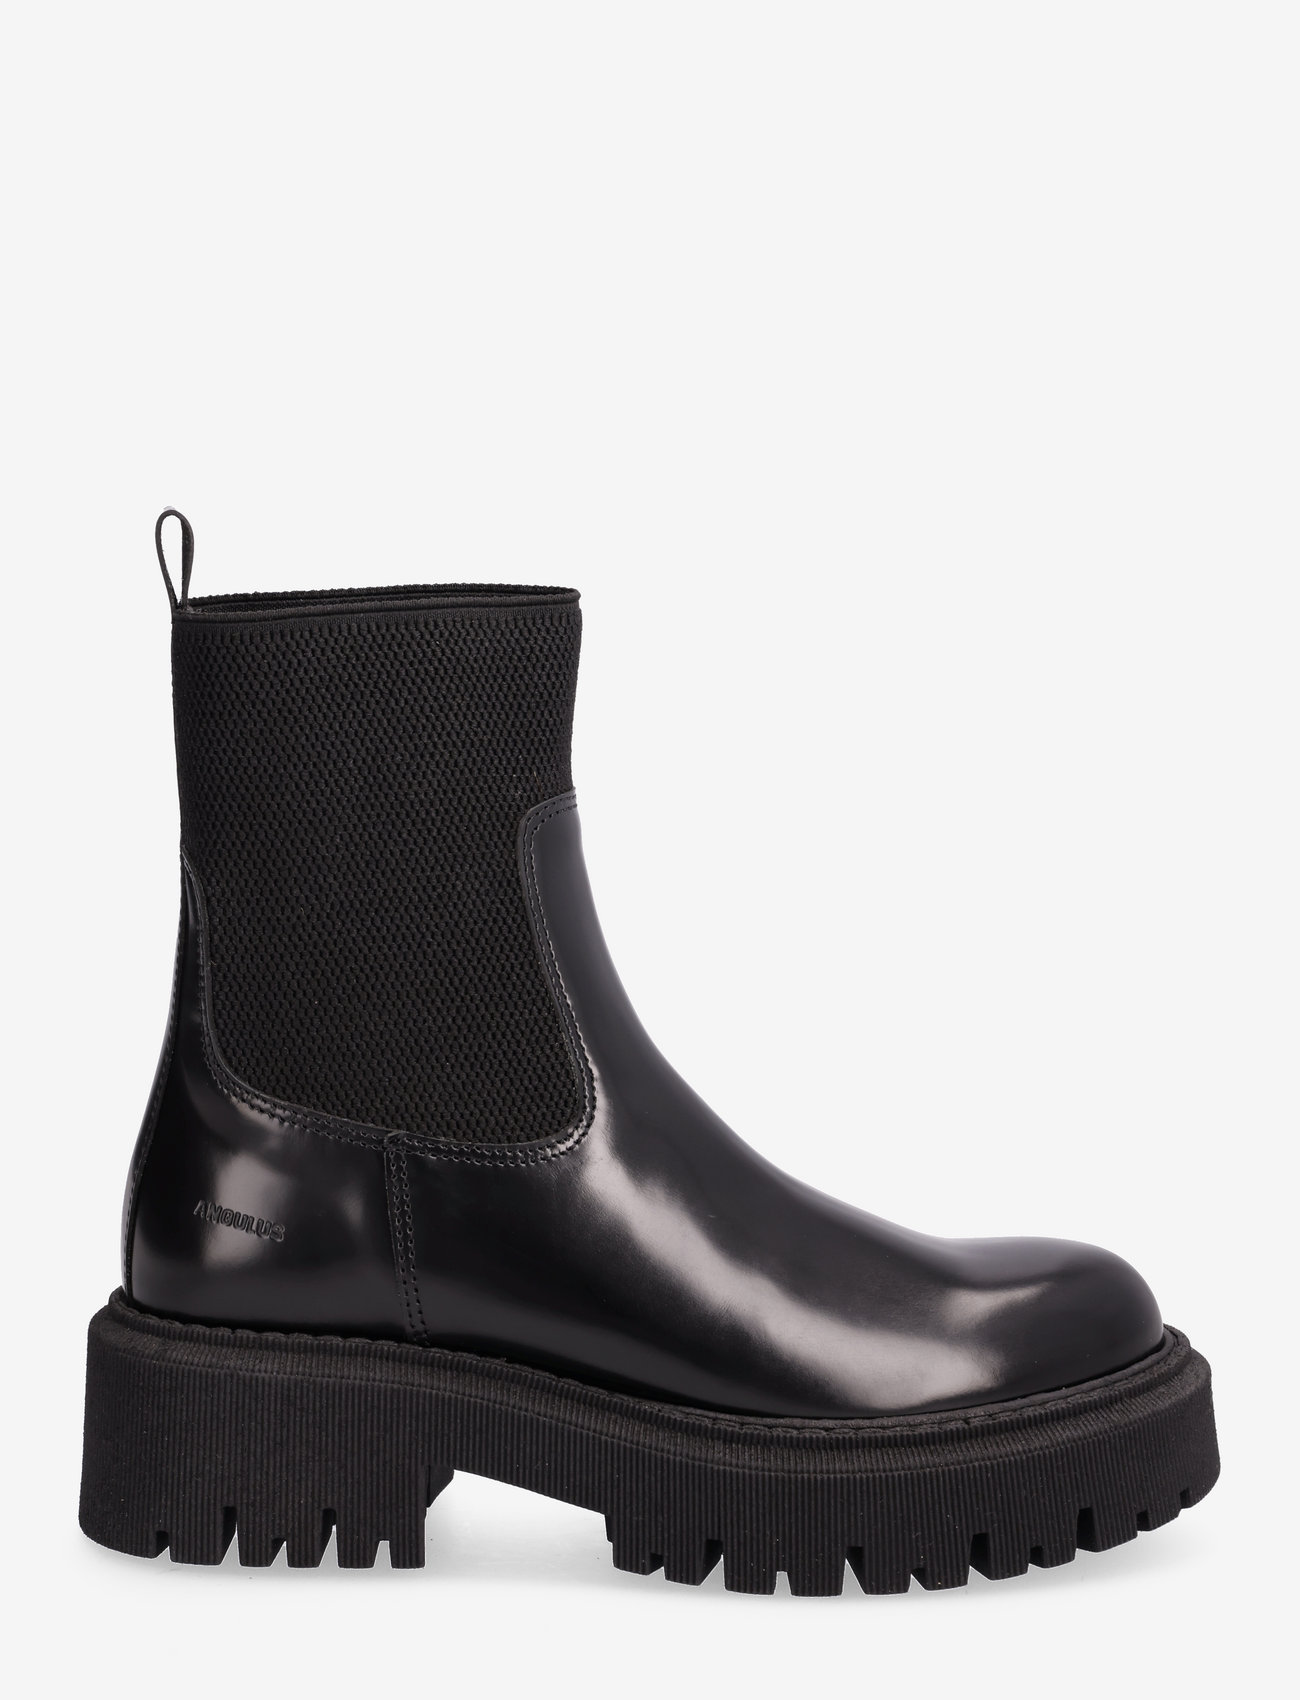 ANGULUS - Boots - flat - flade ankelstøvler - 1425/053 black/black - 1